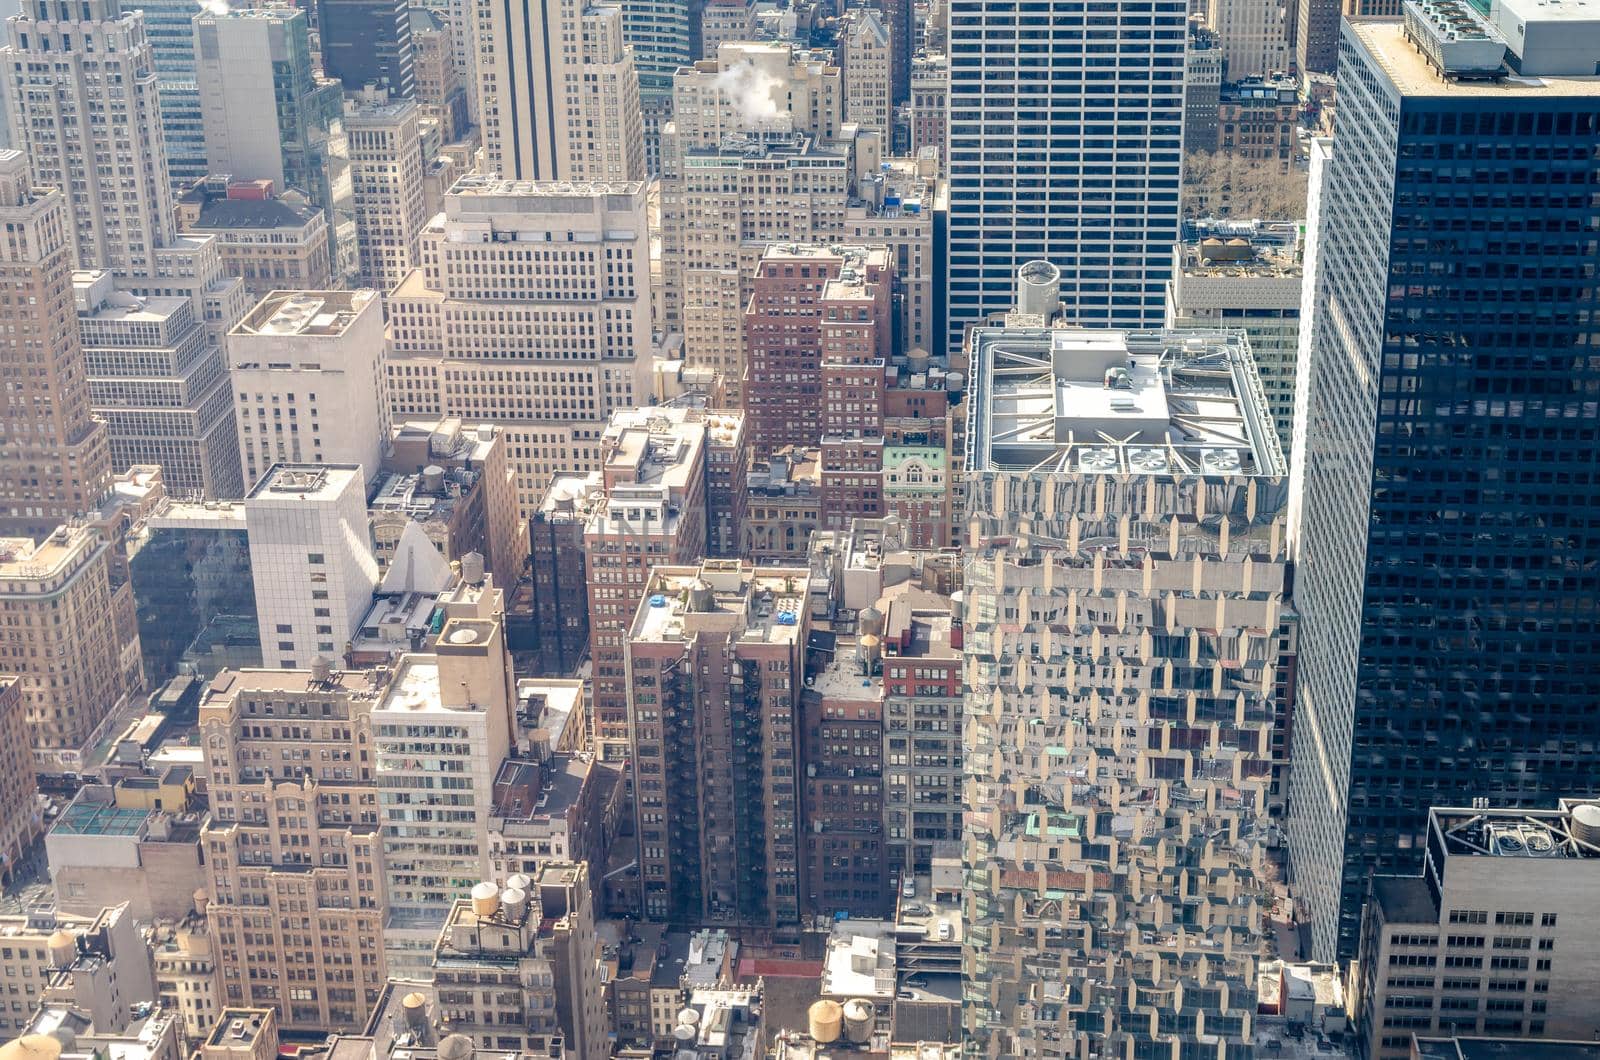 Manhattan Skyscraper, Looking down from Rockefeller Center by bildgigant